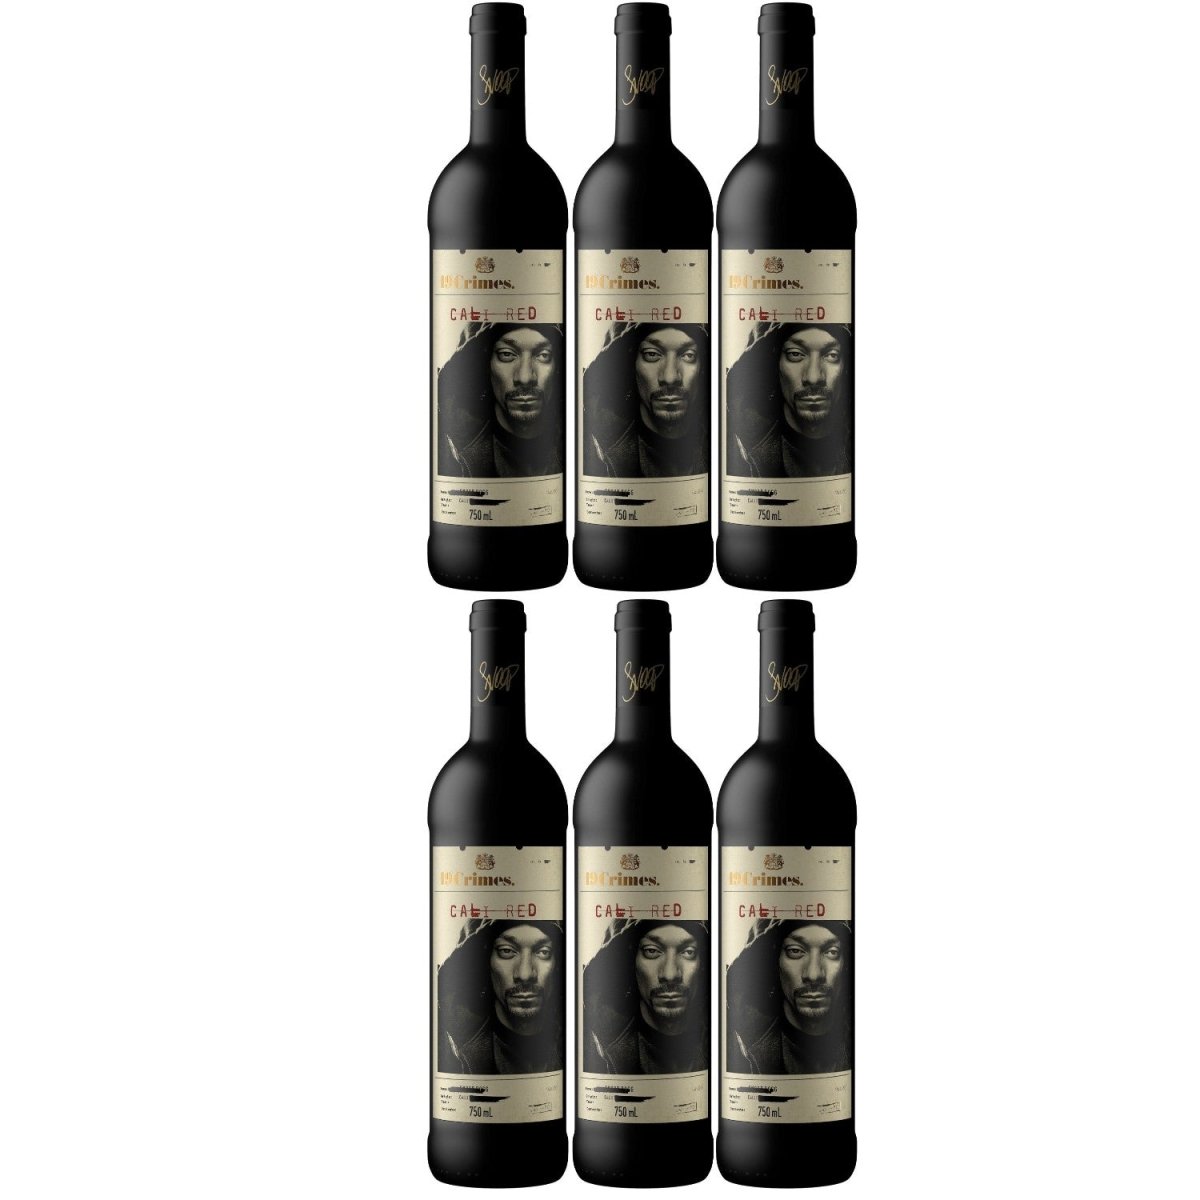 19 Crimes Snoop Dogg Cali Red Penfolds Rotwein Wein Halbtrocken Kalifornien (6 x 0.75l) - Versanel - Wein